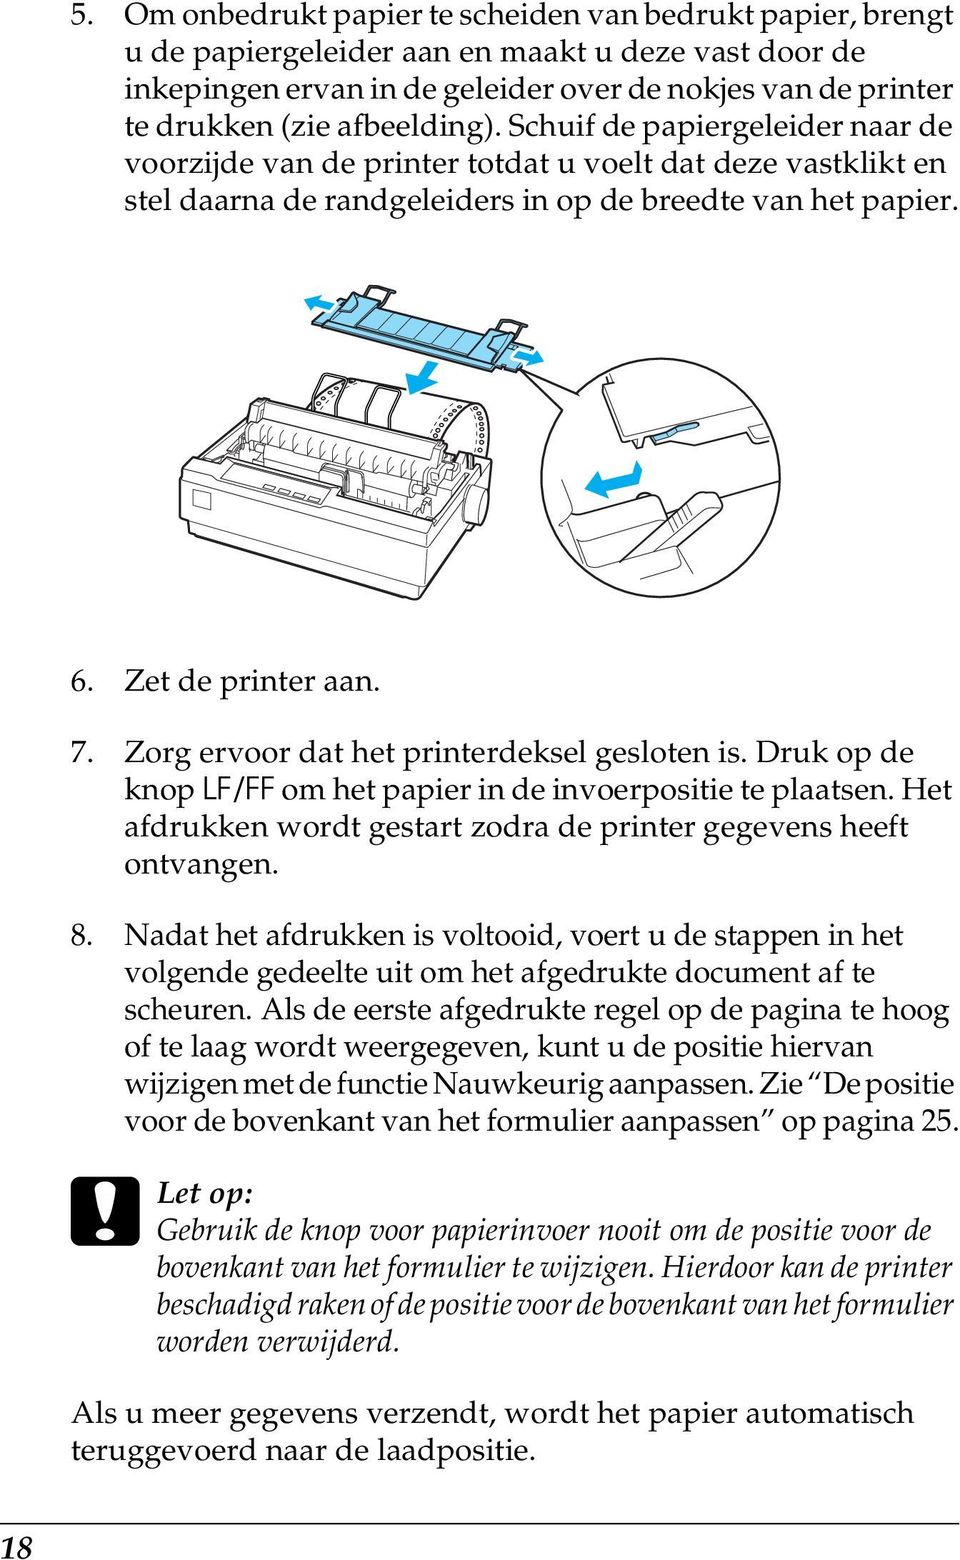 Zorg ervoor dat het printerdeksel gesloten is. Druk op de knop LF/FF om het papier in de invoerpositie te plaatsen. Het afdrukken wordt gestart zodra de printer gegevens heeft ontvangen. 8.